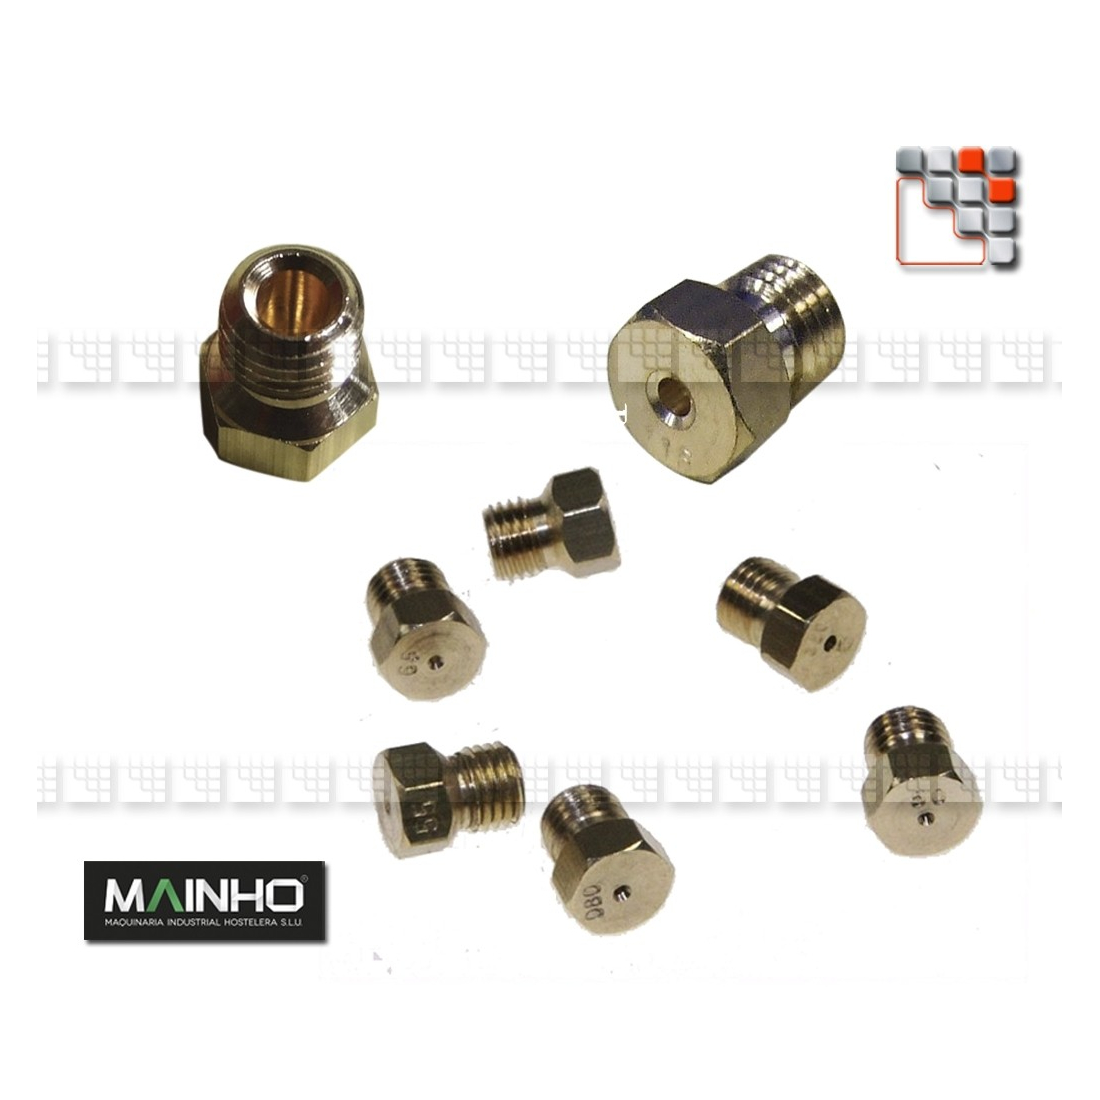 Gas plancha nozzle M36-GCL MAINHO SAV - Accessoires Spare parts MAINHO